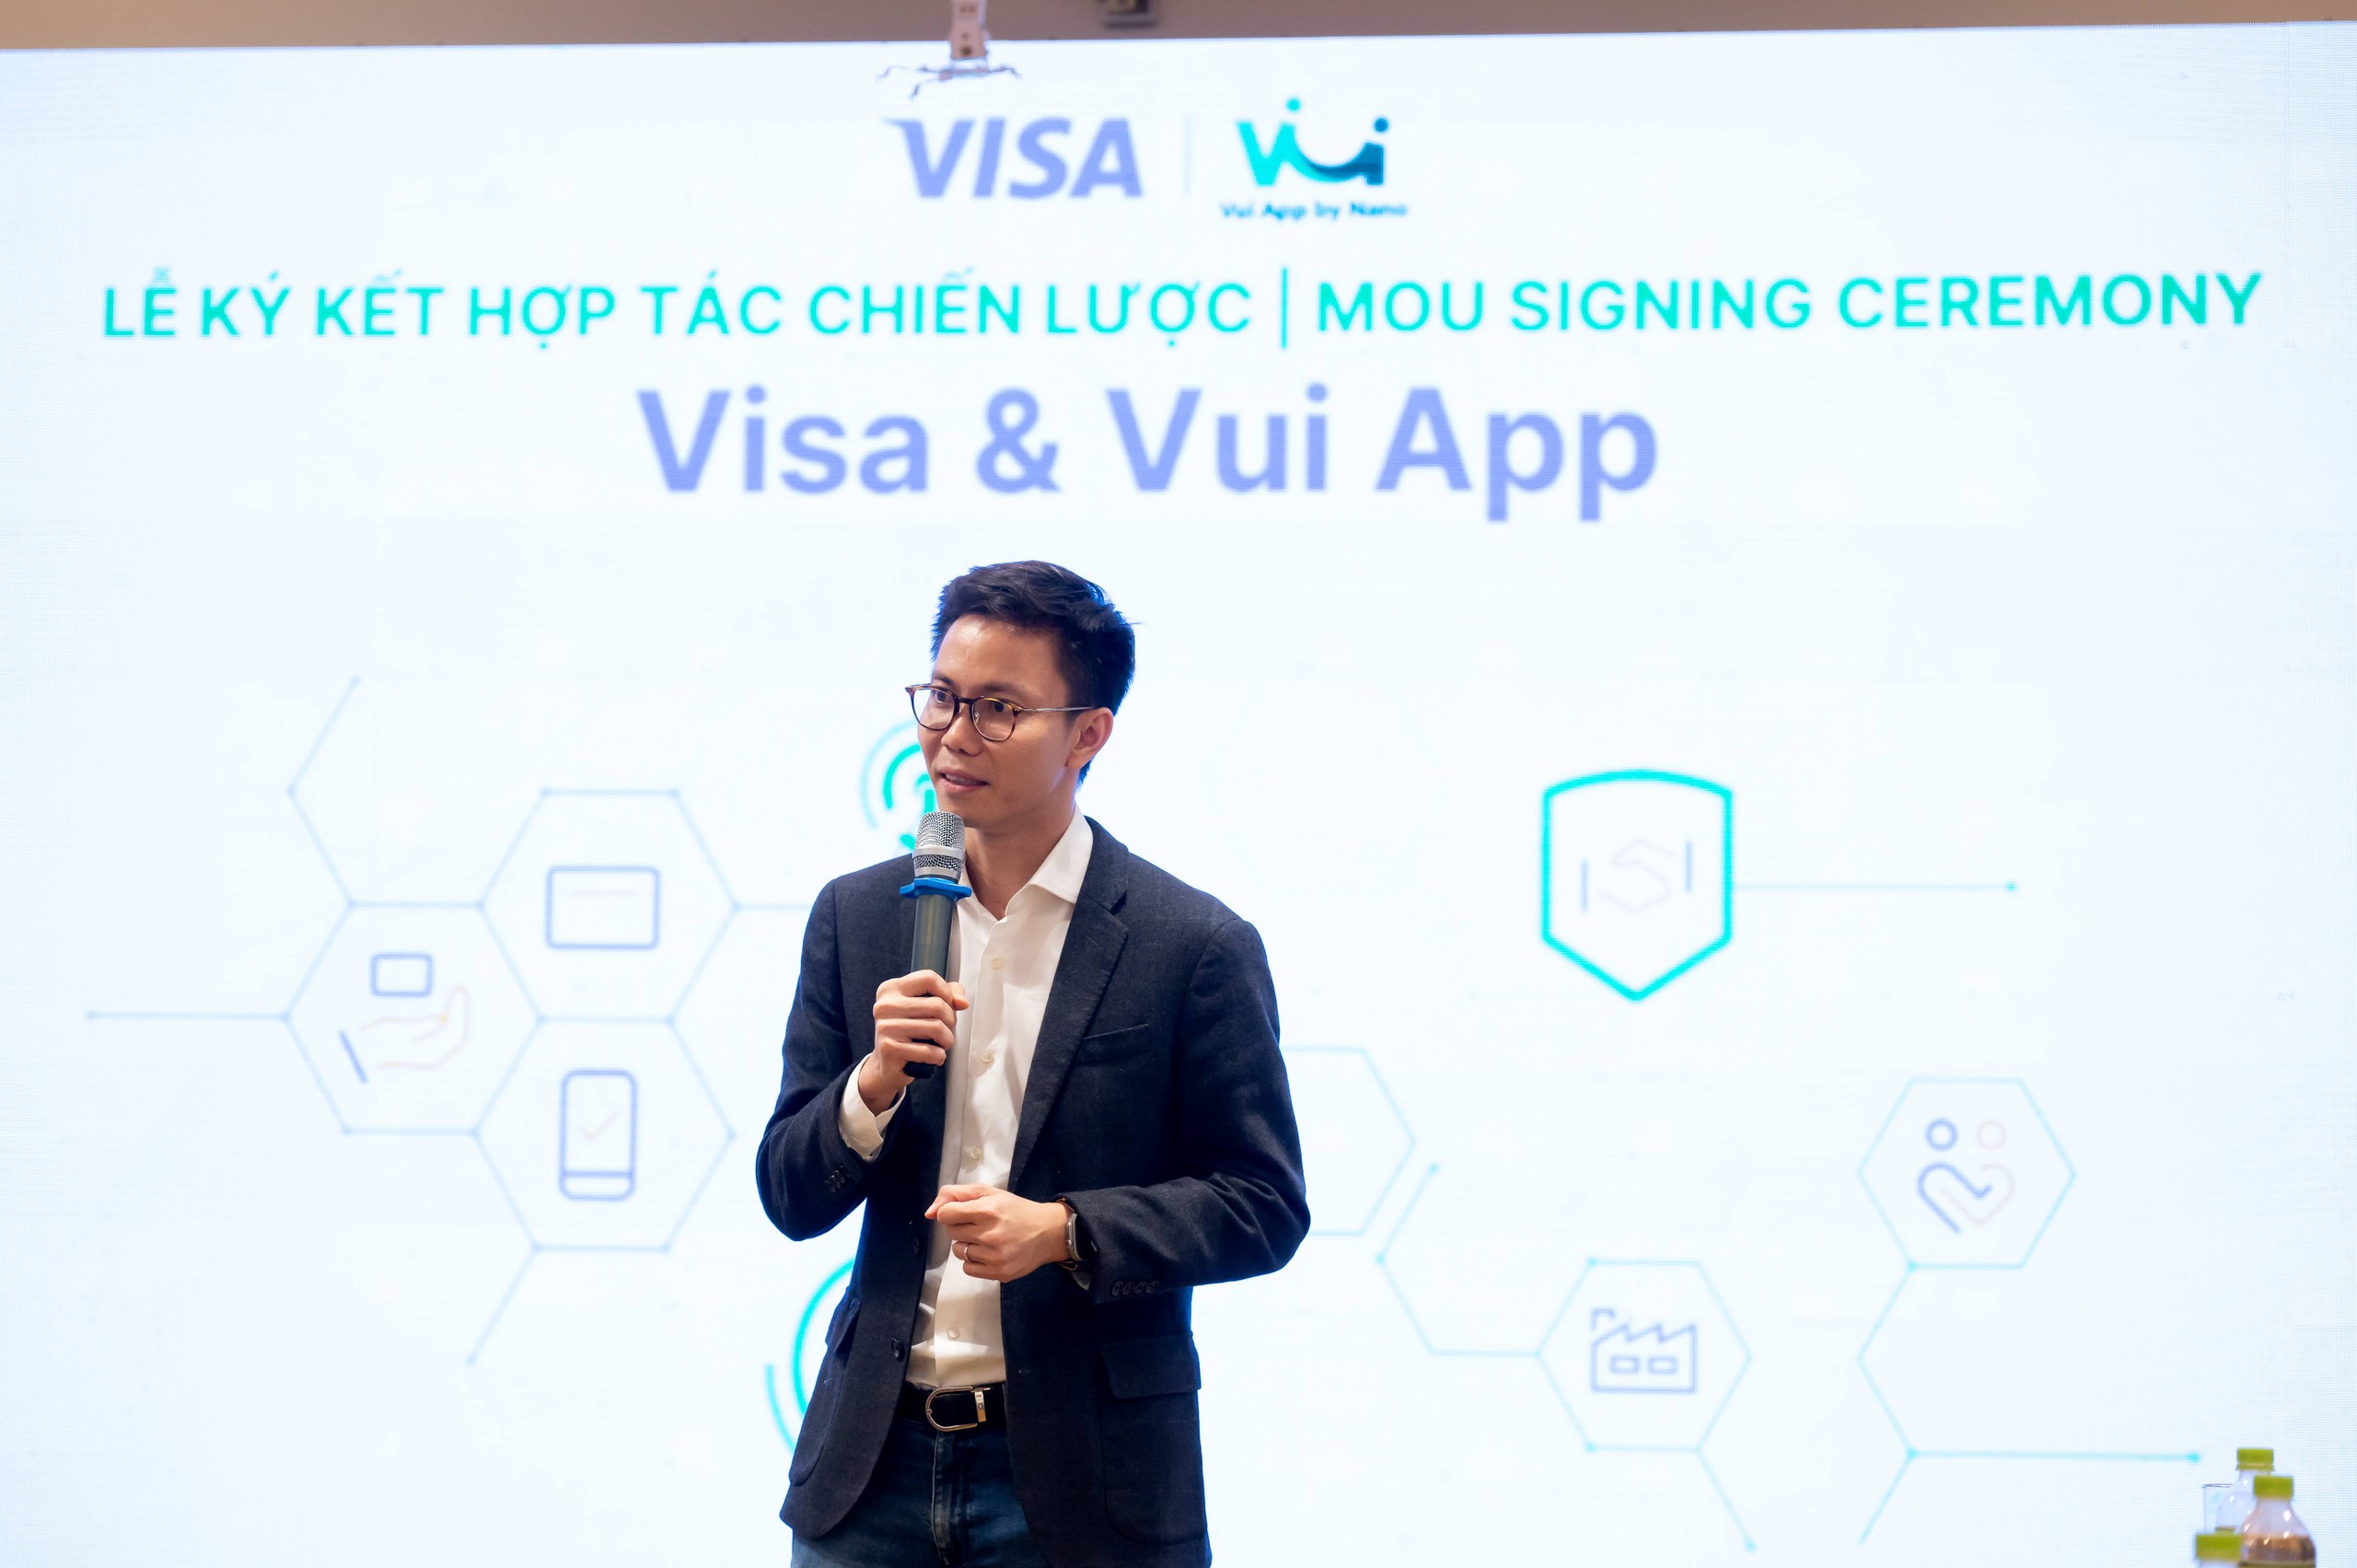 Startup Việt giúp người lao động rút trước tiền lương trong 60 giây bắt tay với công ty thanh toán điện tử hàng đầu thế giới, giải quyết "nỗi đau" của 17% nhân sự - Ảnh 2.